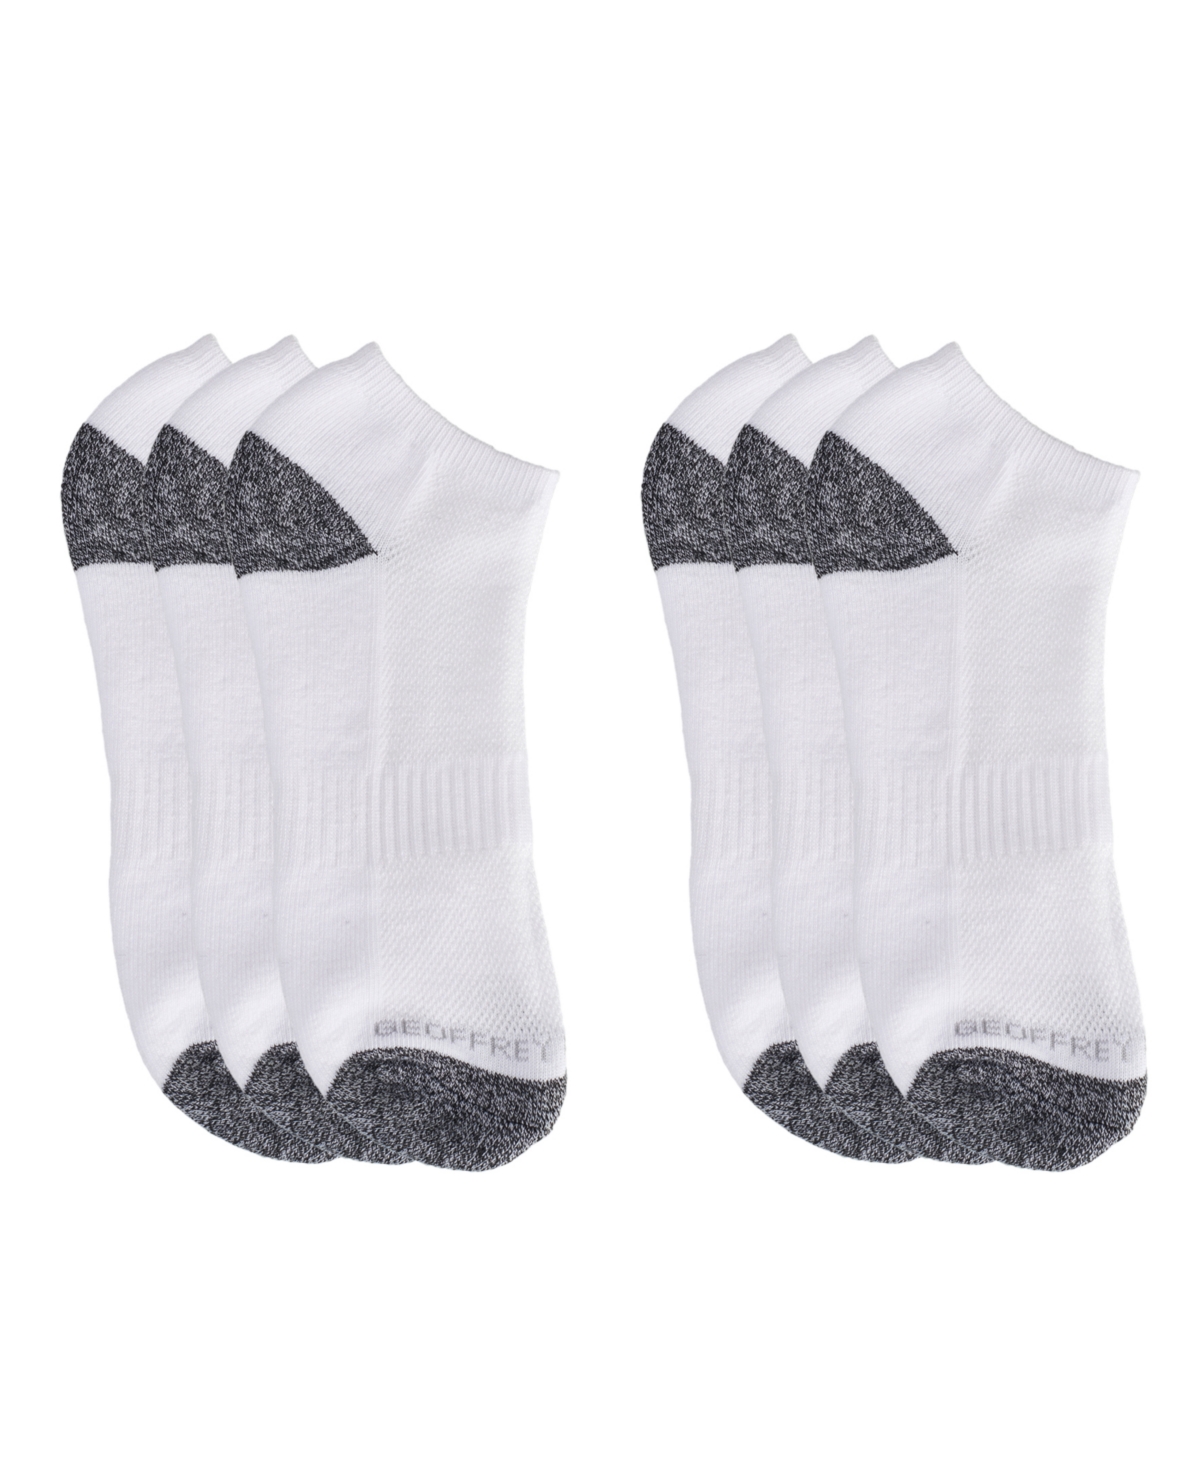 Geoffrey Beene Men's Cushioned Low Cut Socks, Pack of 6